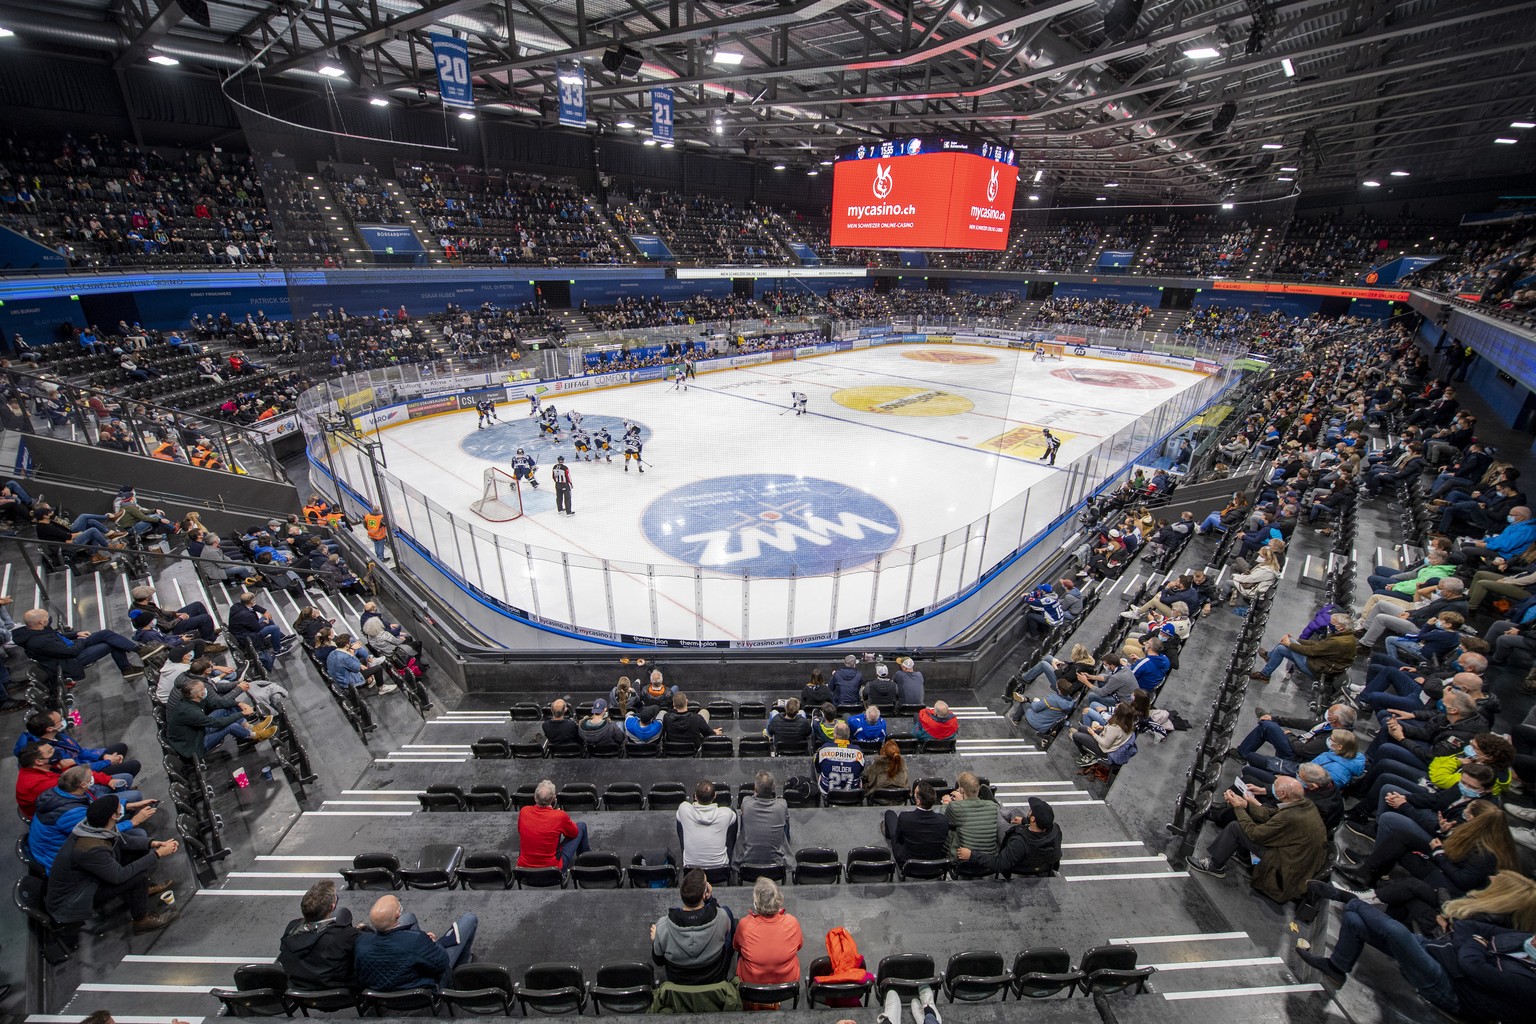 Rund 3000 Zuger Eishockey Fans geniessen das Spiel beim Eishockey Meisterschaftsspiel in der Qualifikation der National League zwischen dem EV Zug und den ZSC Lions vom Freitag, 23. Oktober 2020 in Zu ...